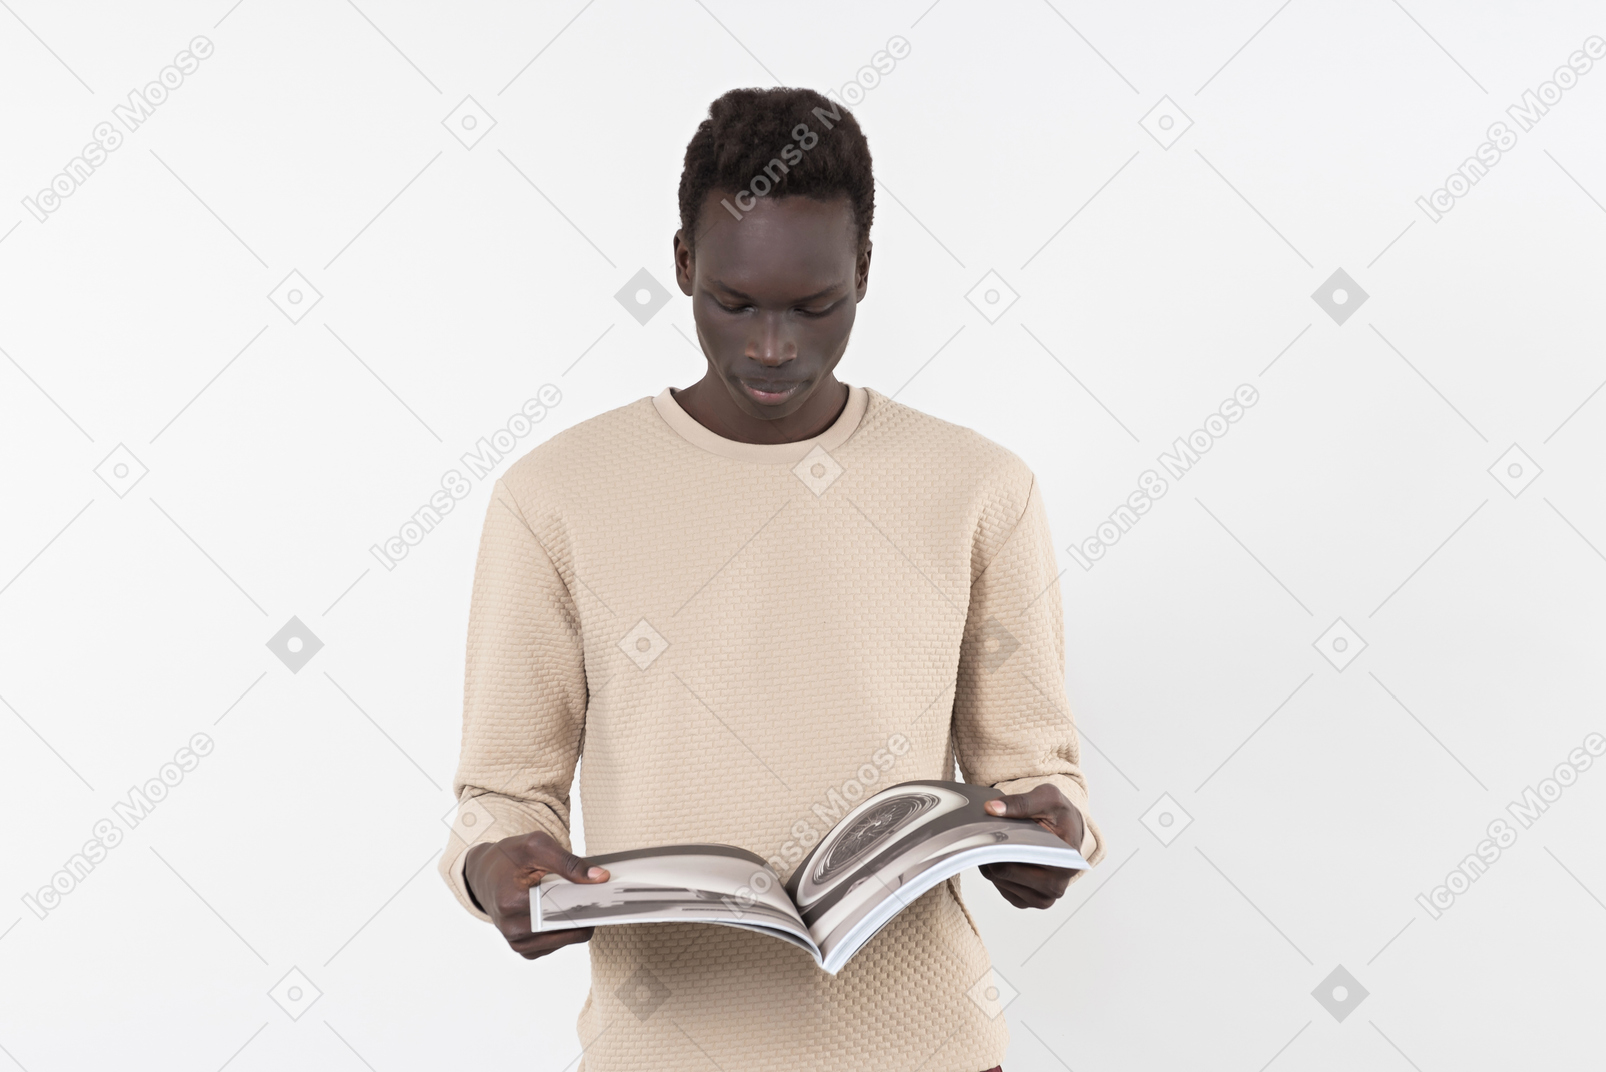 Ein junger schwarzer mann in einem grauen pullover, der allein auf dem weißen hintergrund mit einem buch in seinen händen steht